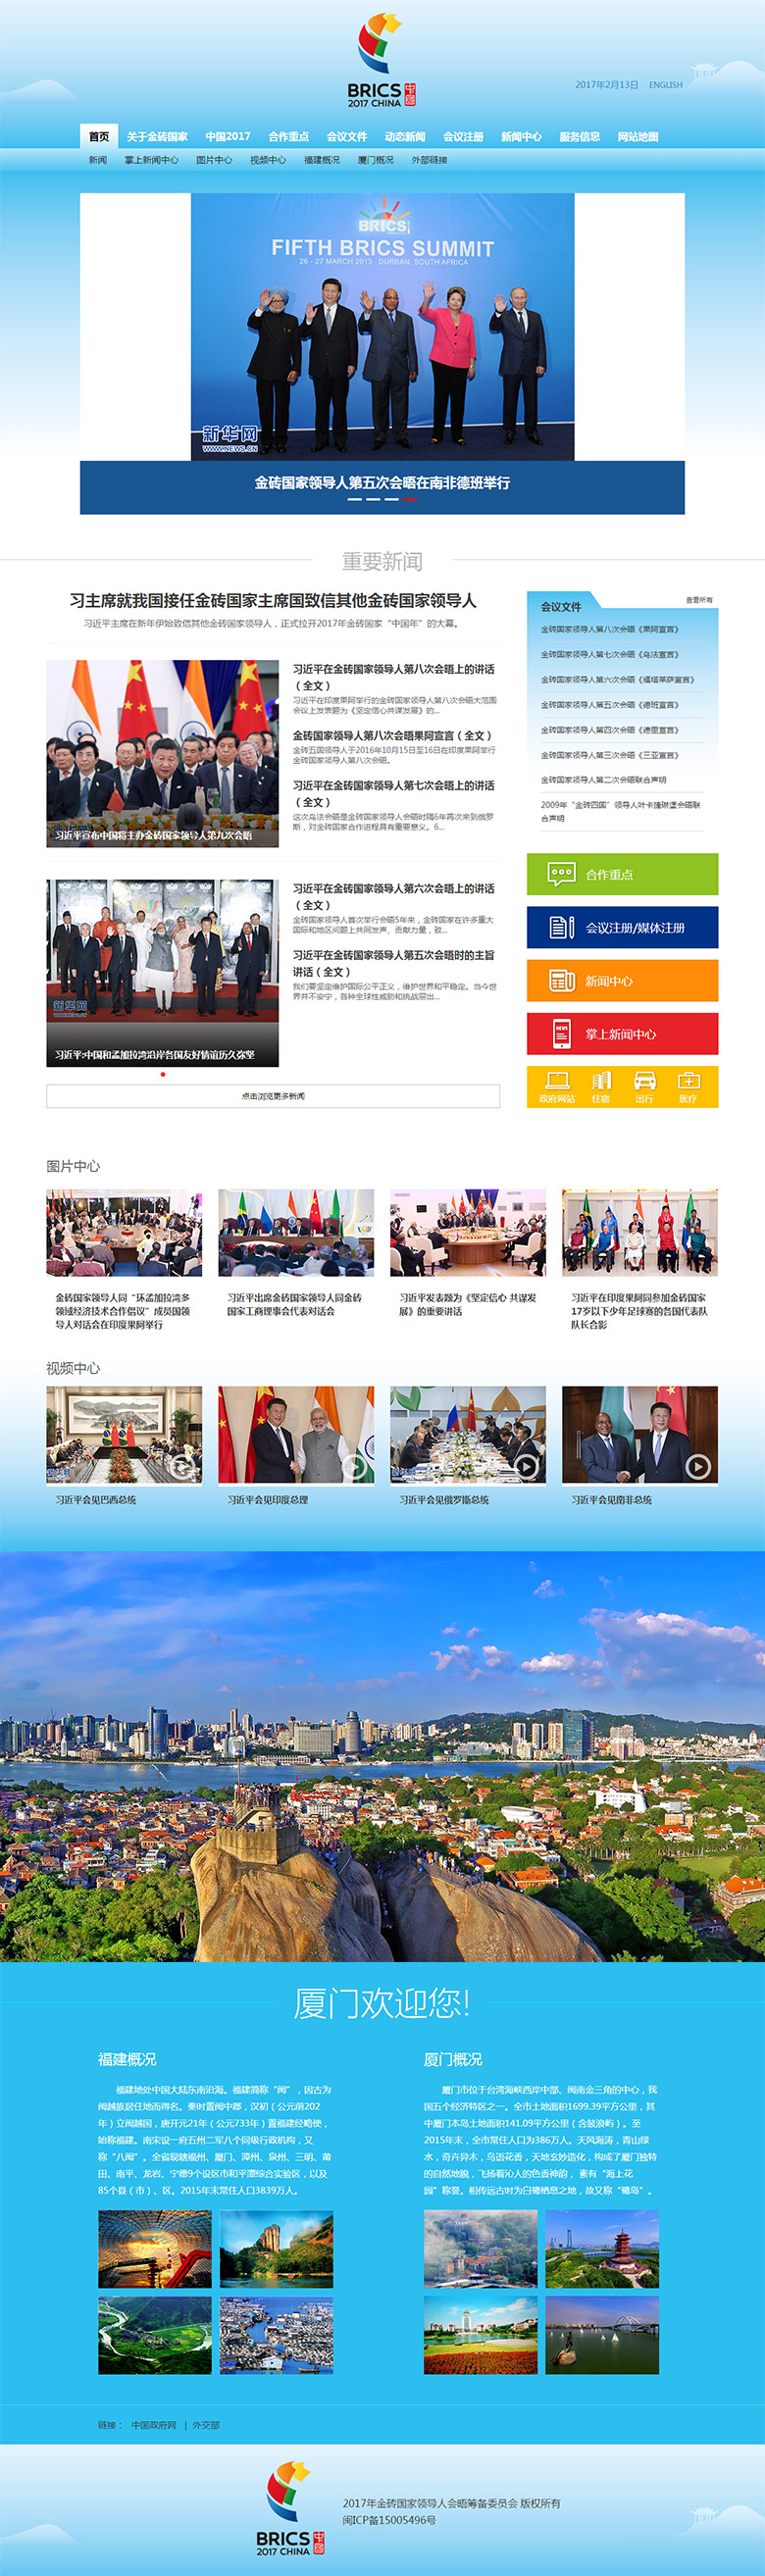 2017年金砖国家峰会官方LOGO、网站公布